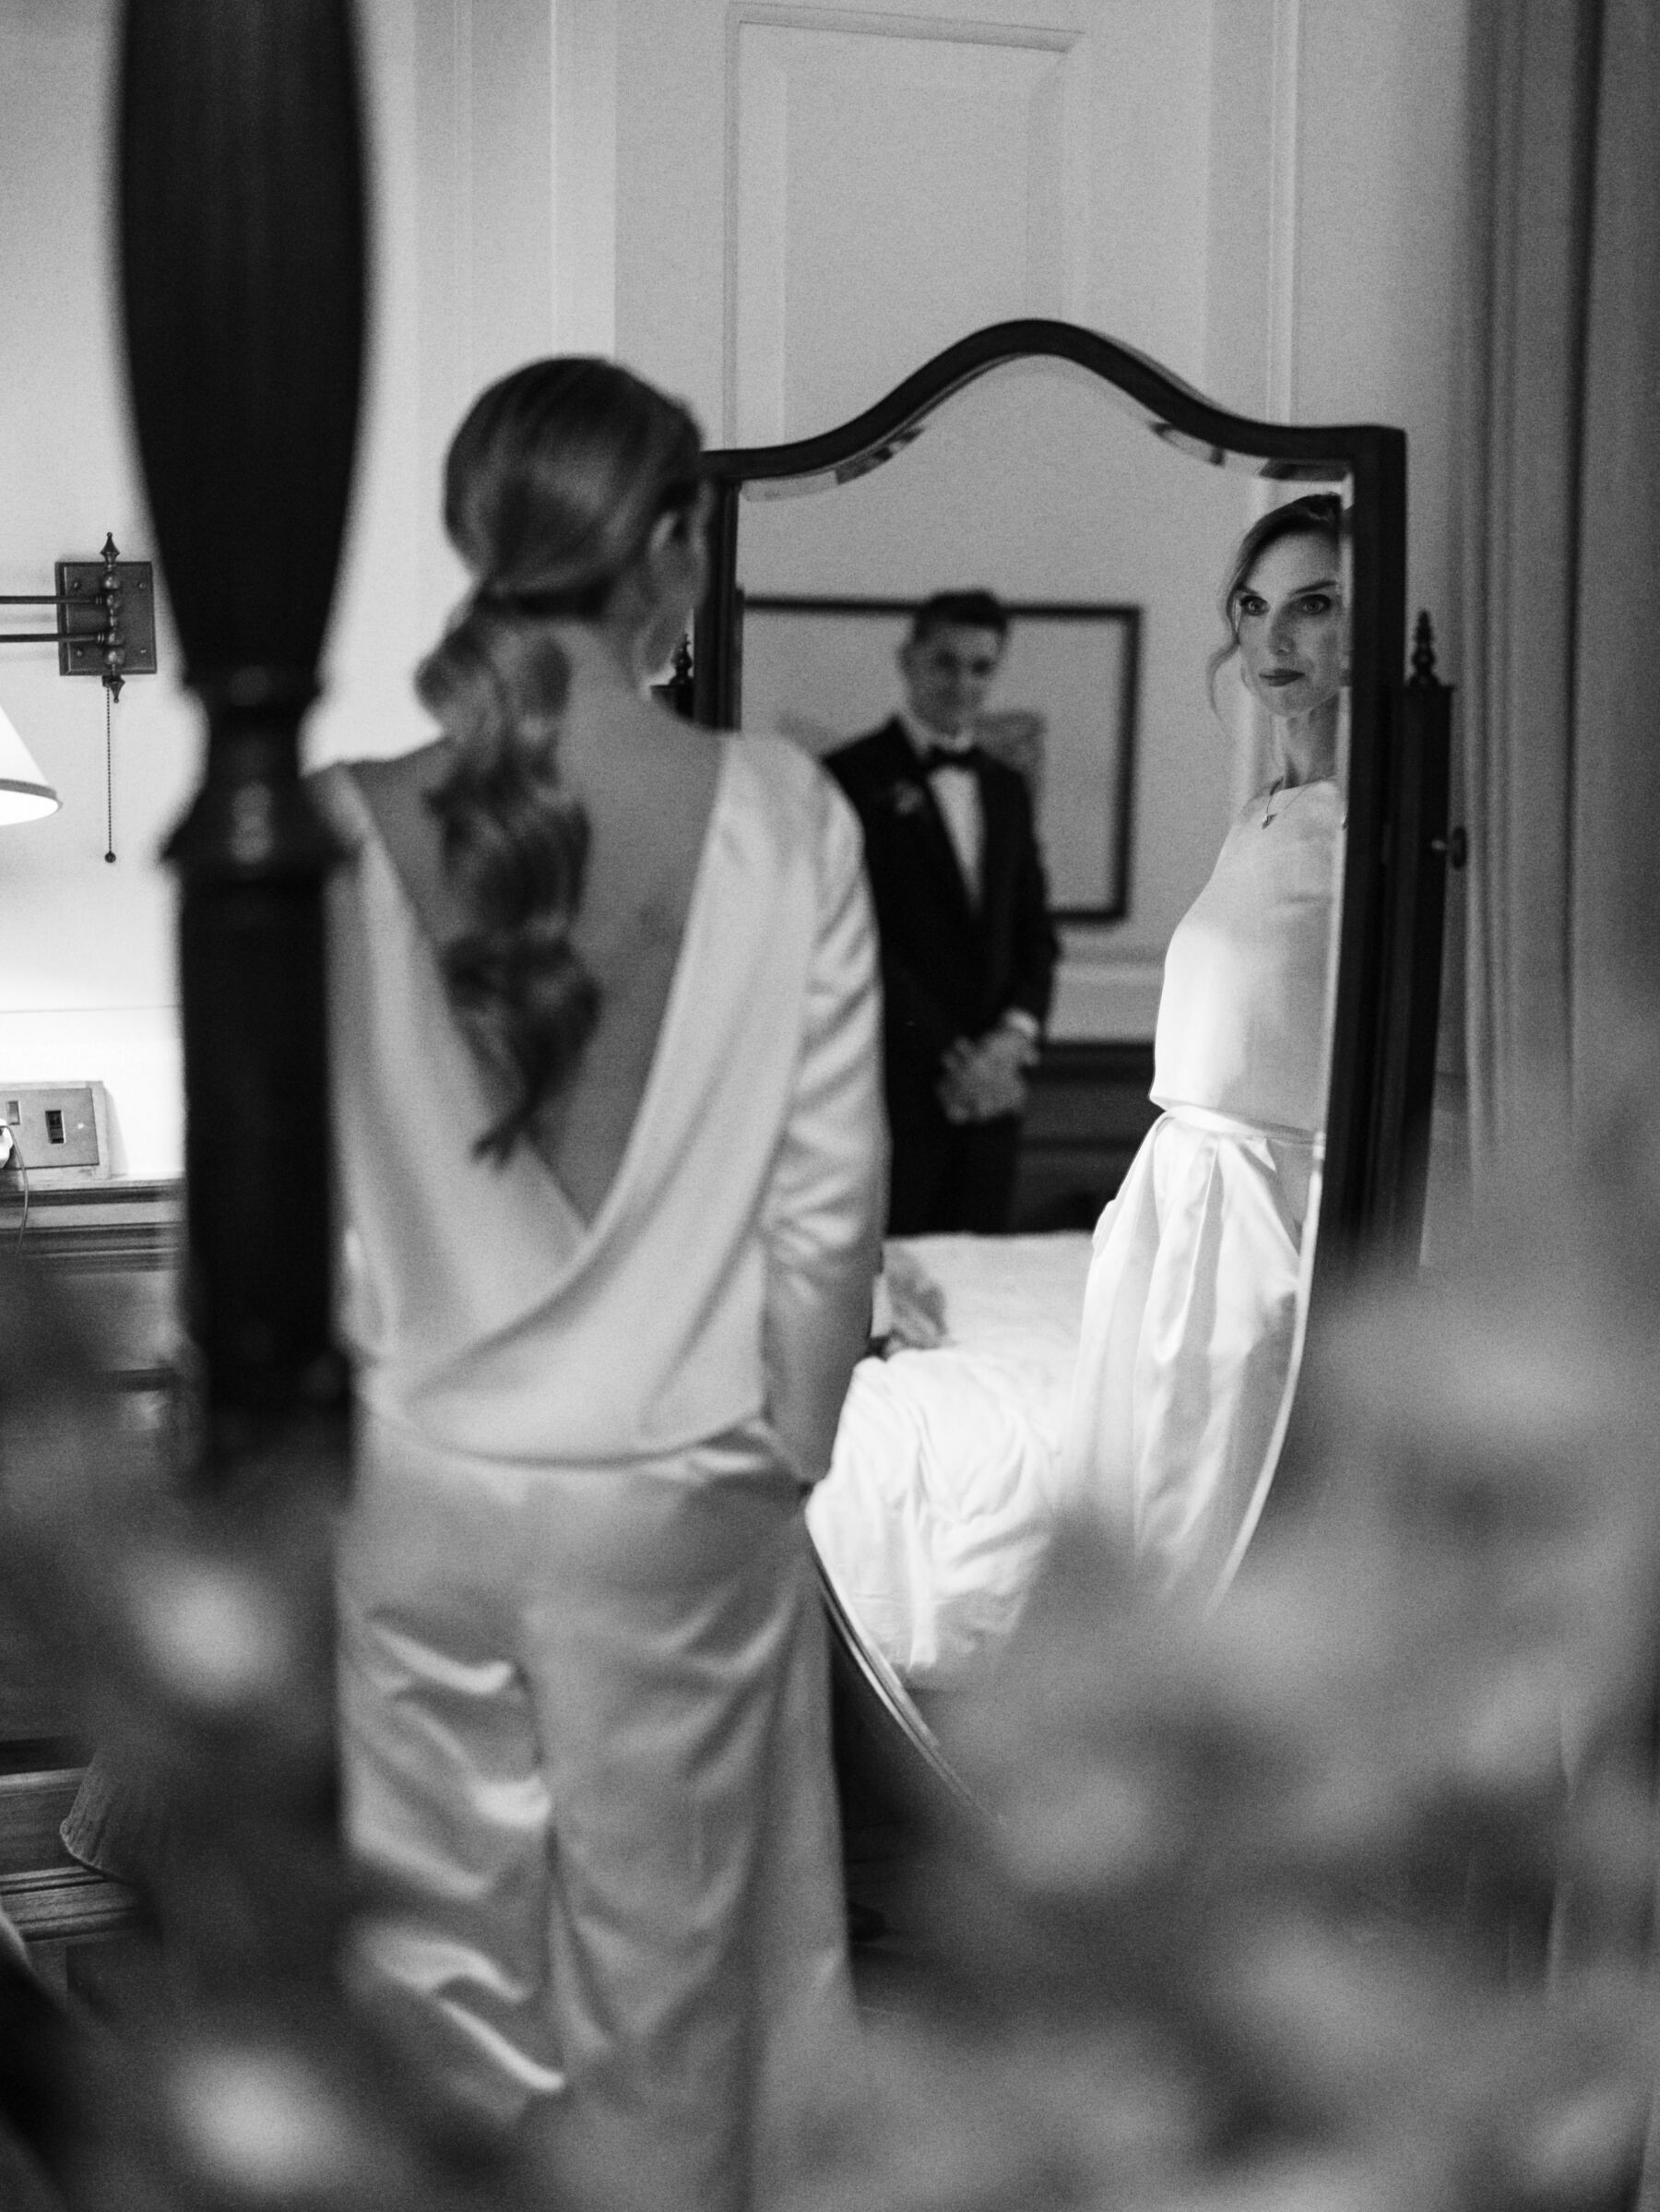 Halfpenny London cowl back wedding dress. Kernwell Photography.